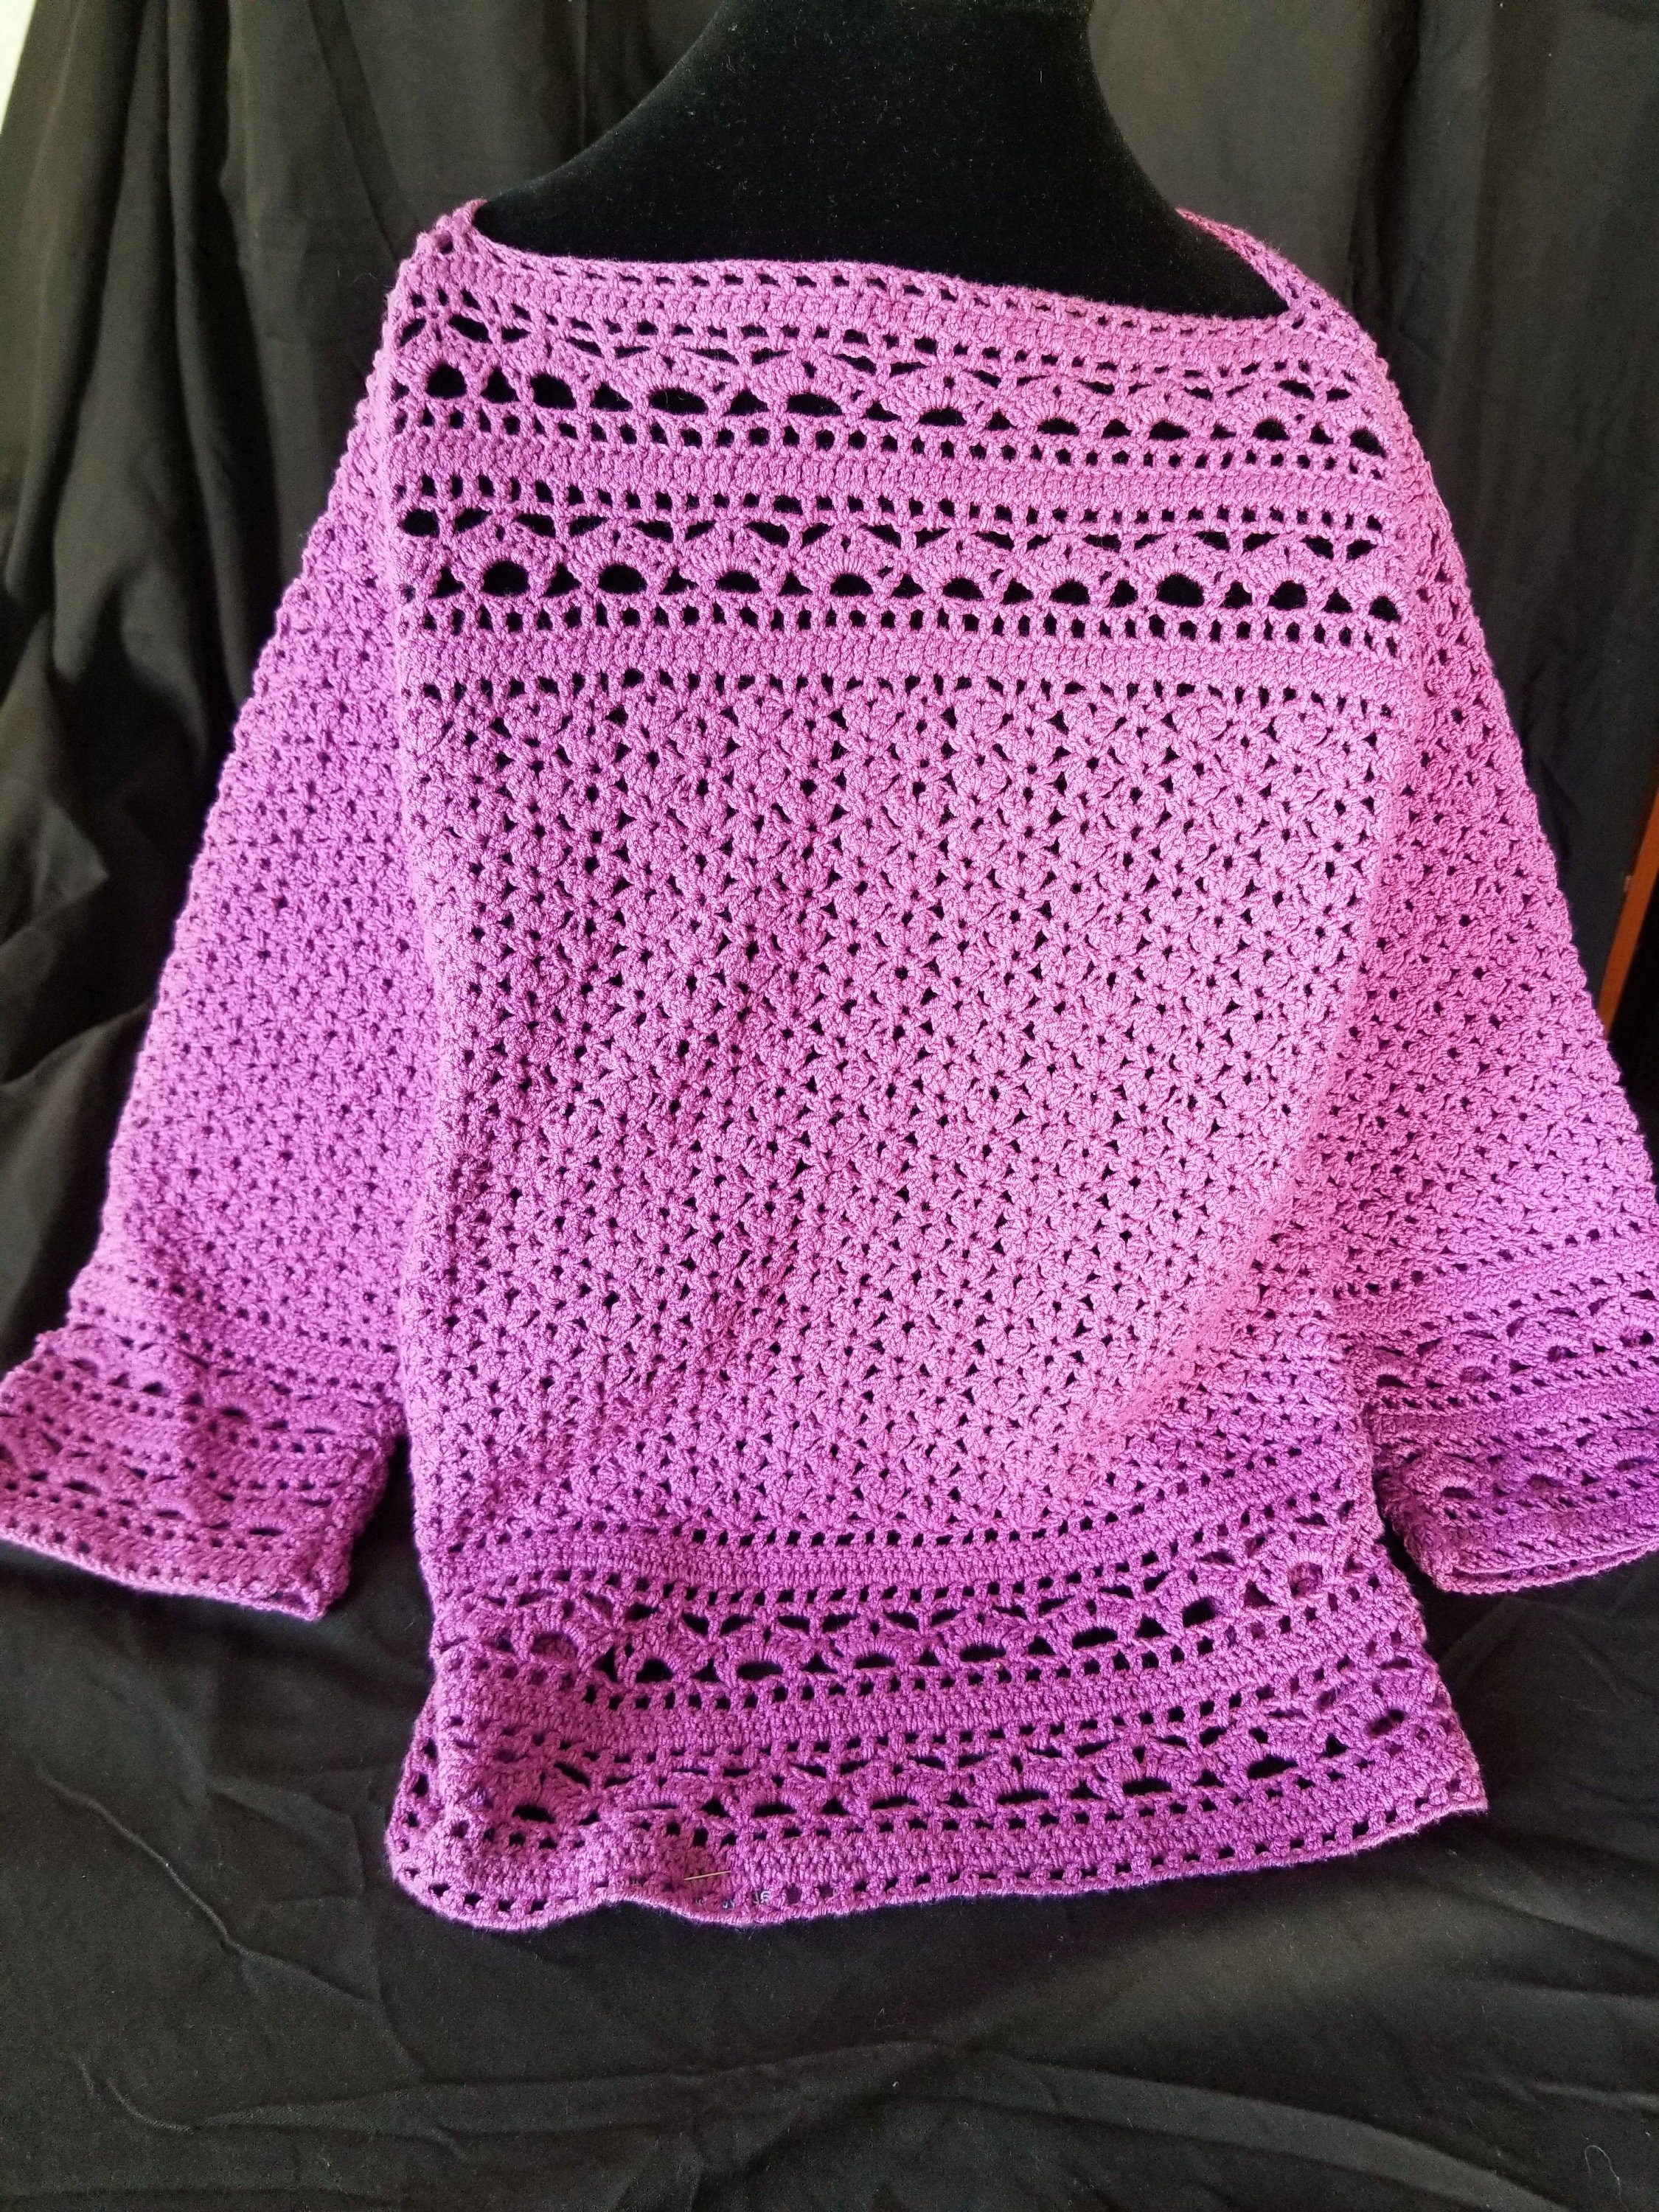 Handmade Crocheted Top, Elegant Handcrafted Crochet Top for Women ...